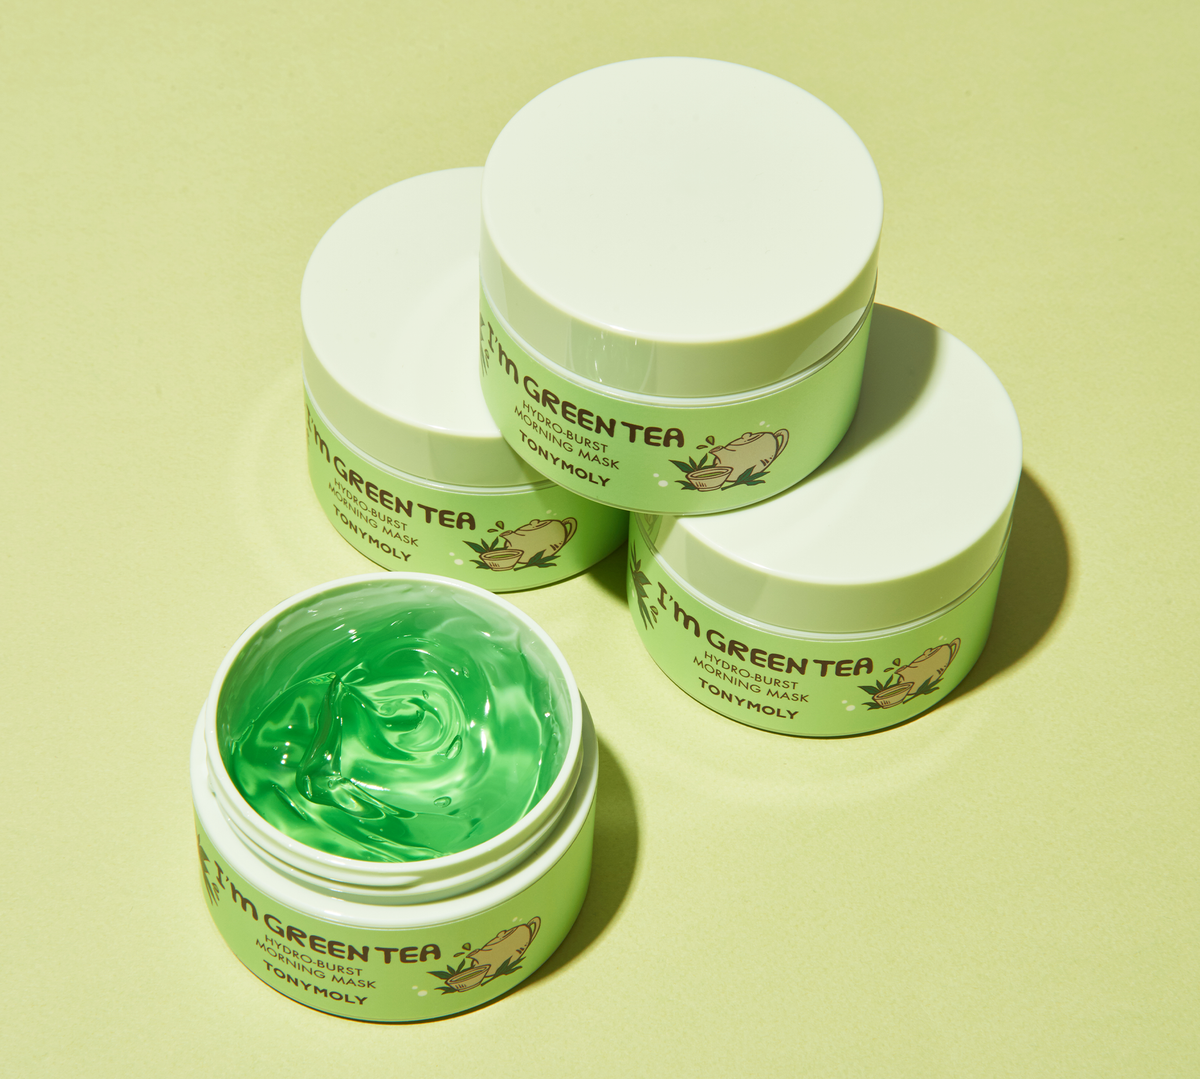 Green Tea extract Skincare Wallpaper. Смываемые корейские маски